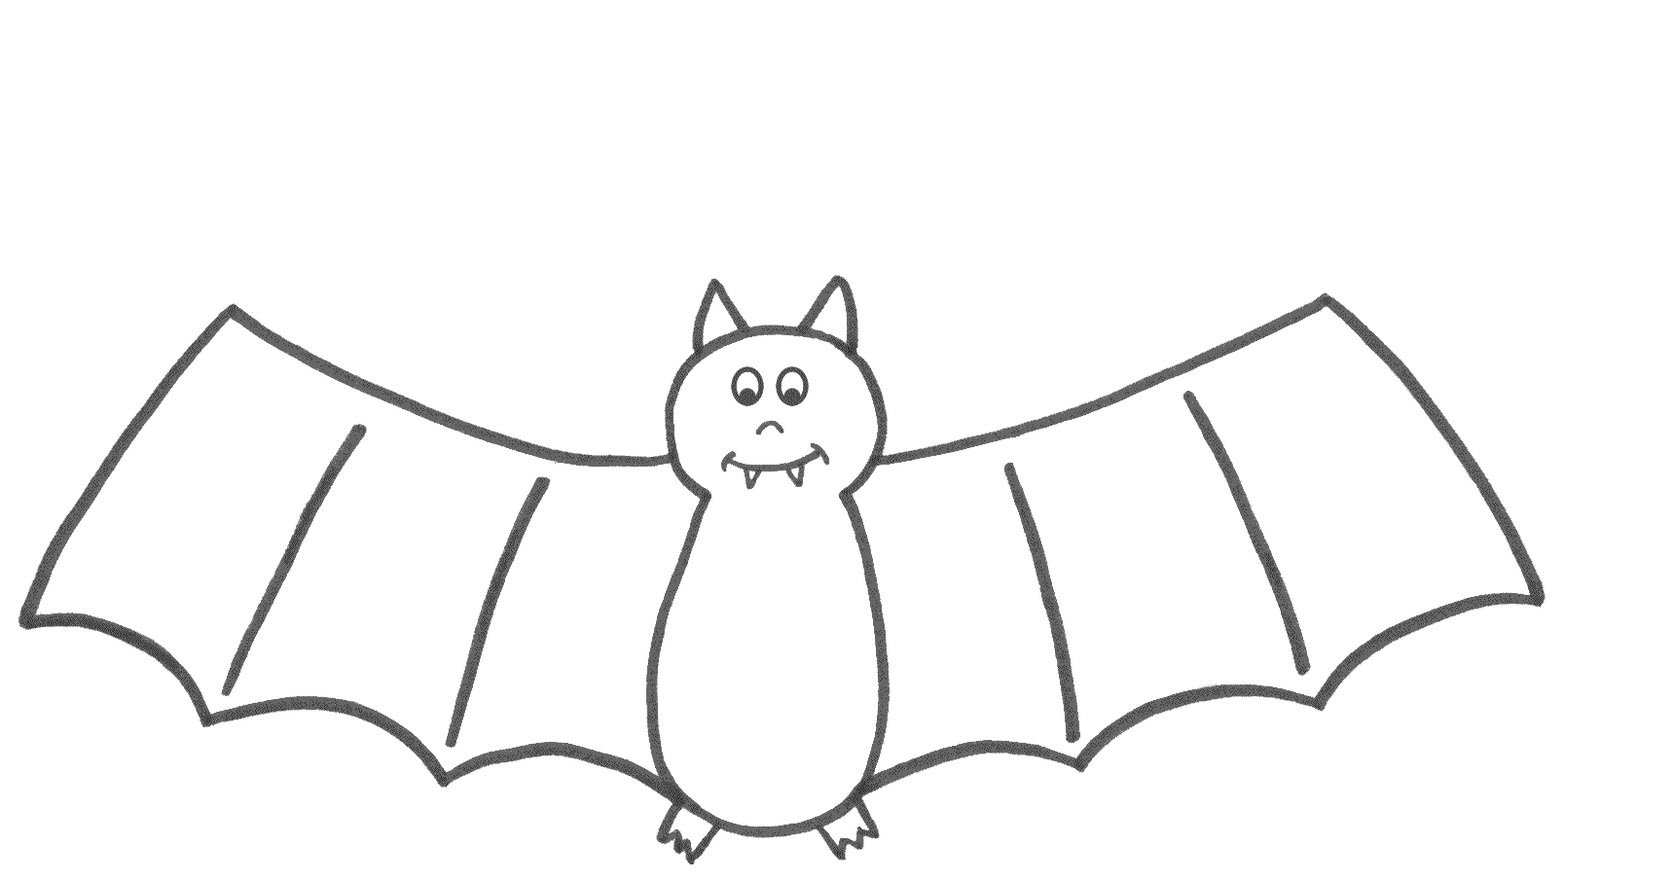 bat-drawing-template-at-getdrawings-free-download